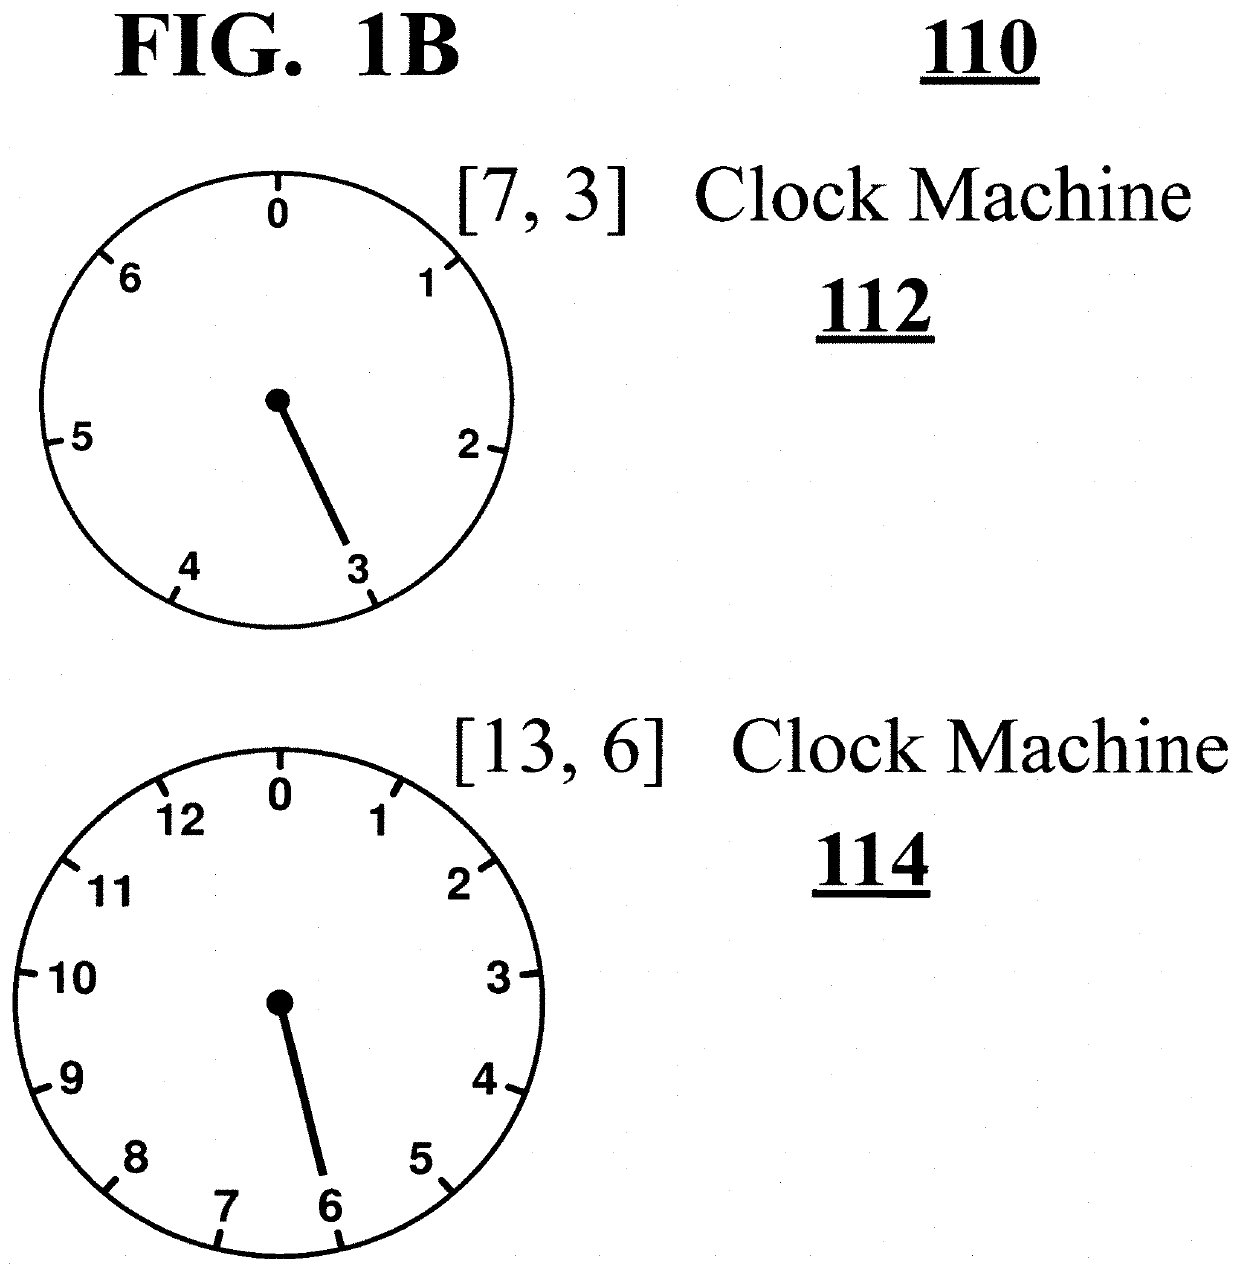 Clock computing Machines